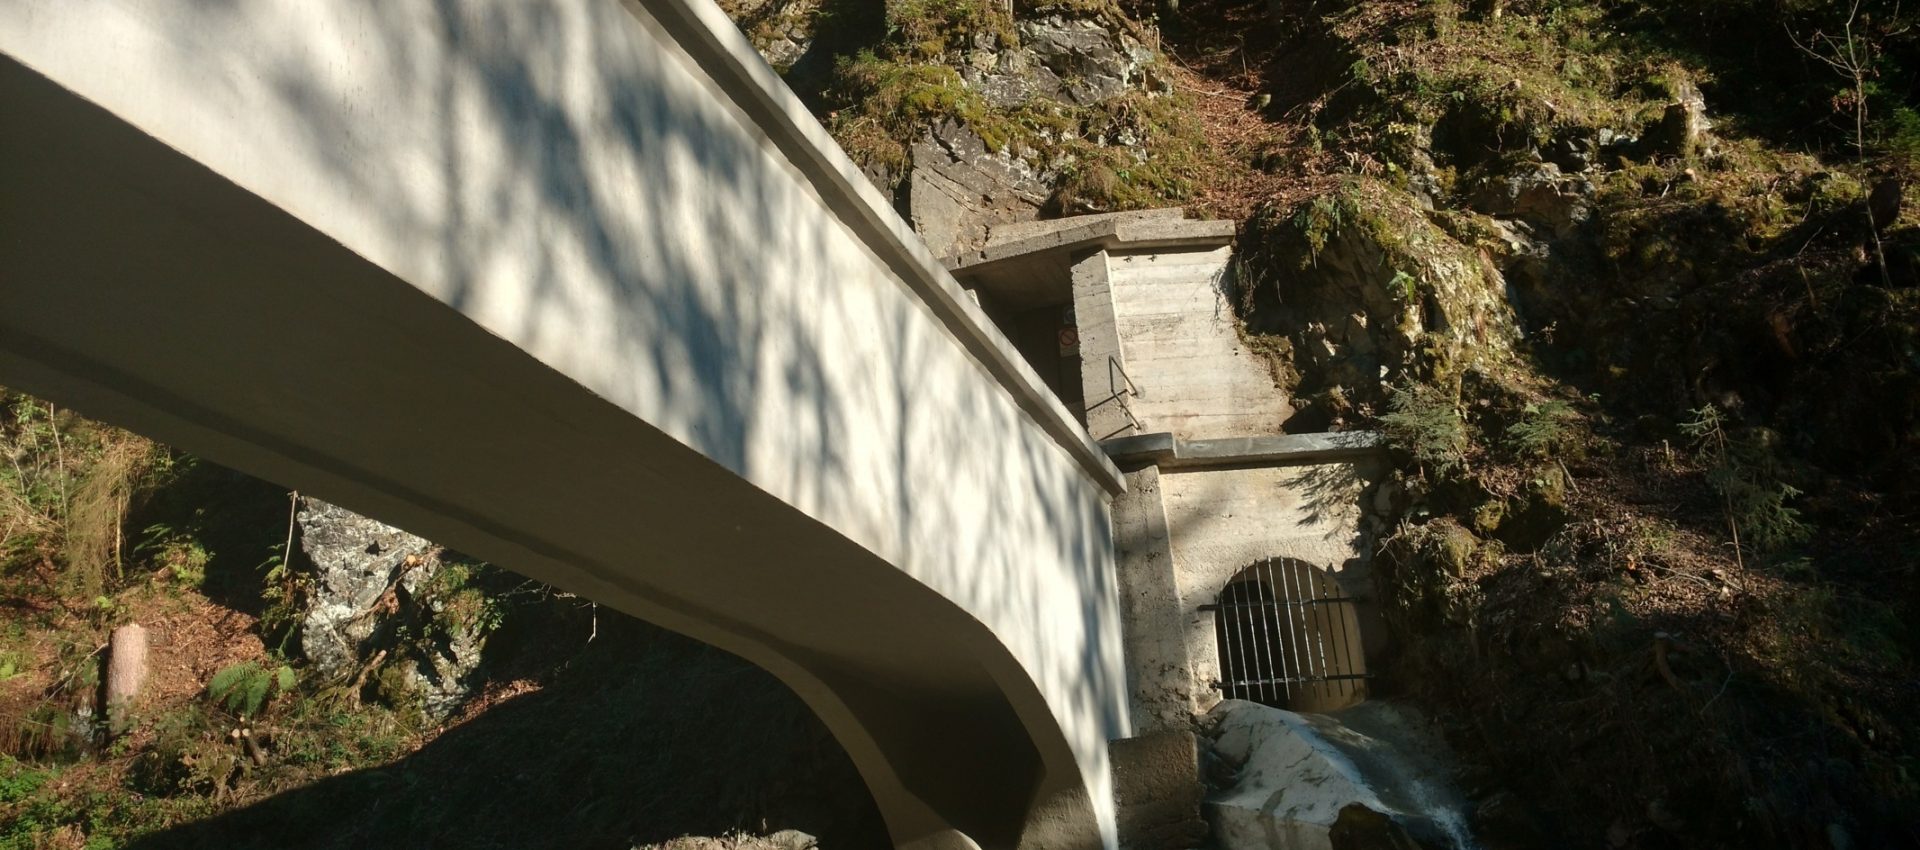 consolidamento ponte canale rio lozen